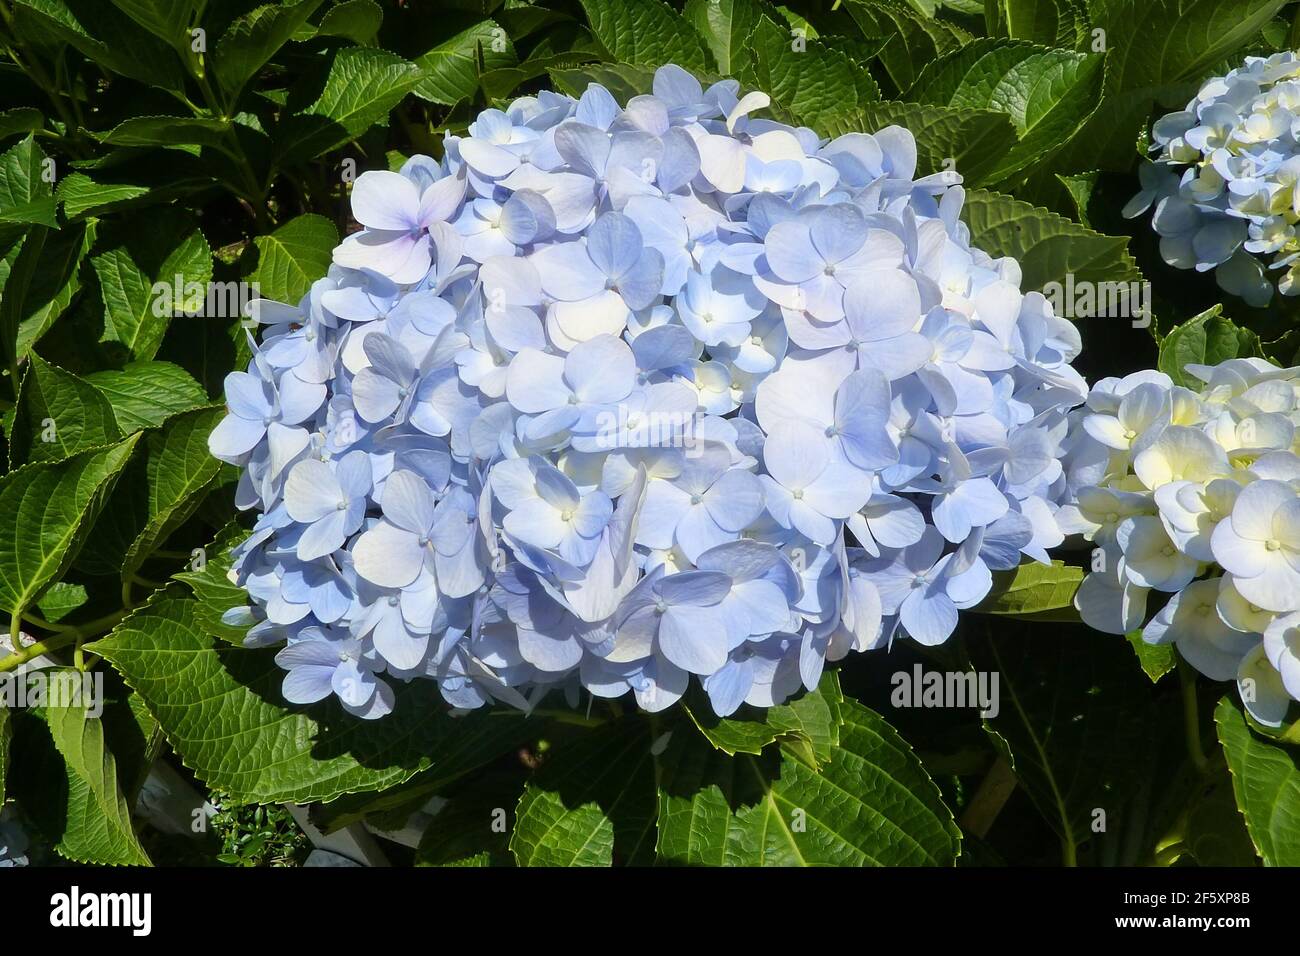 Blaue Hortensia (Hydrangea macrophylla) blüht im Sommergarten mit grünen Blättern am Busch. Sanfter hellblauer Blütenstand von Hortensia in voller Bl Stockfoto